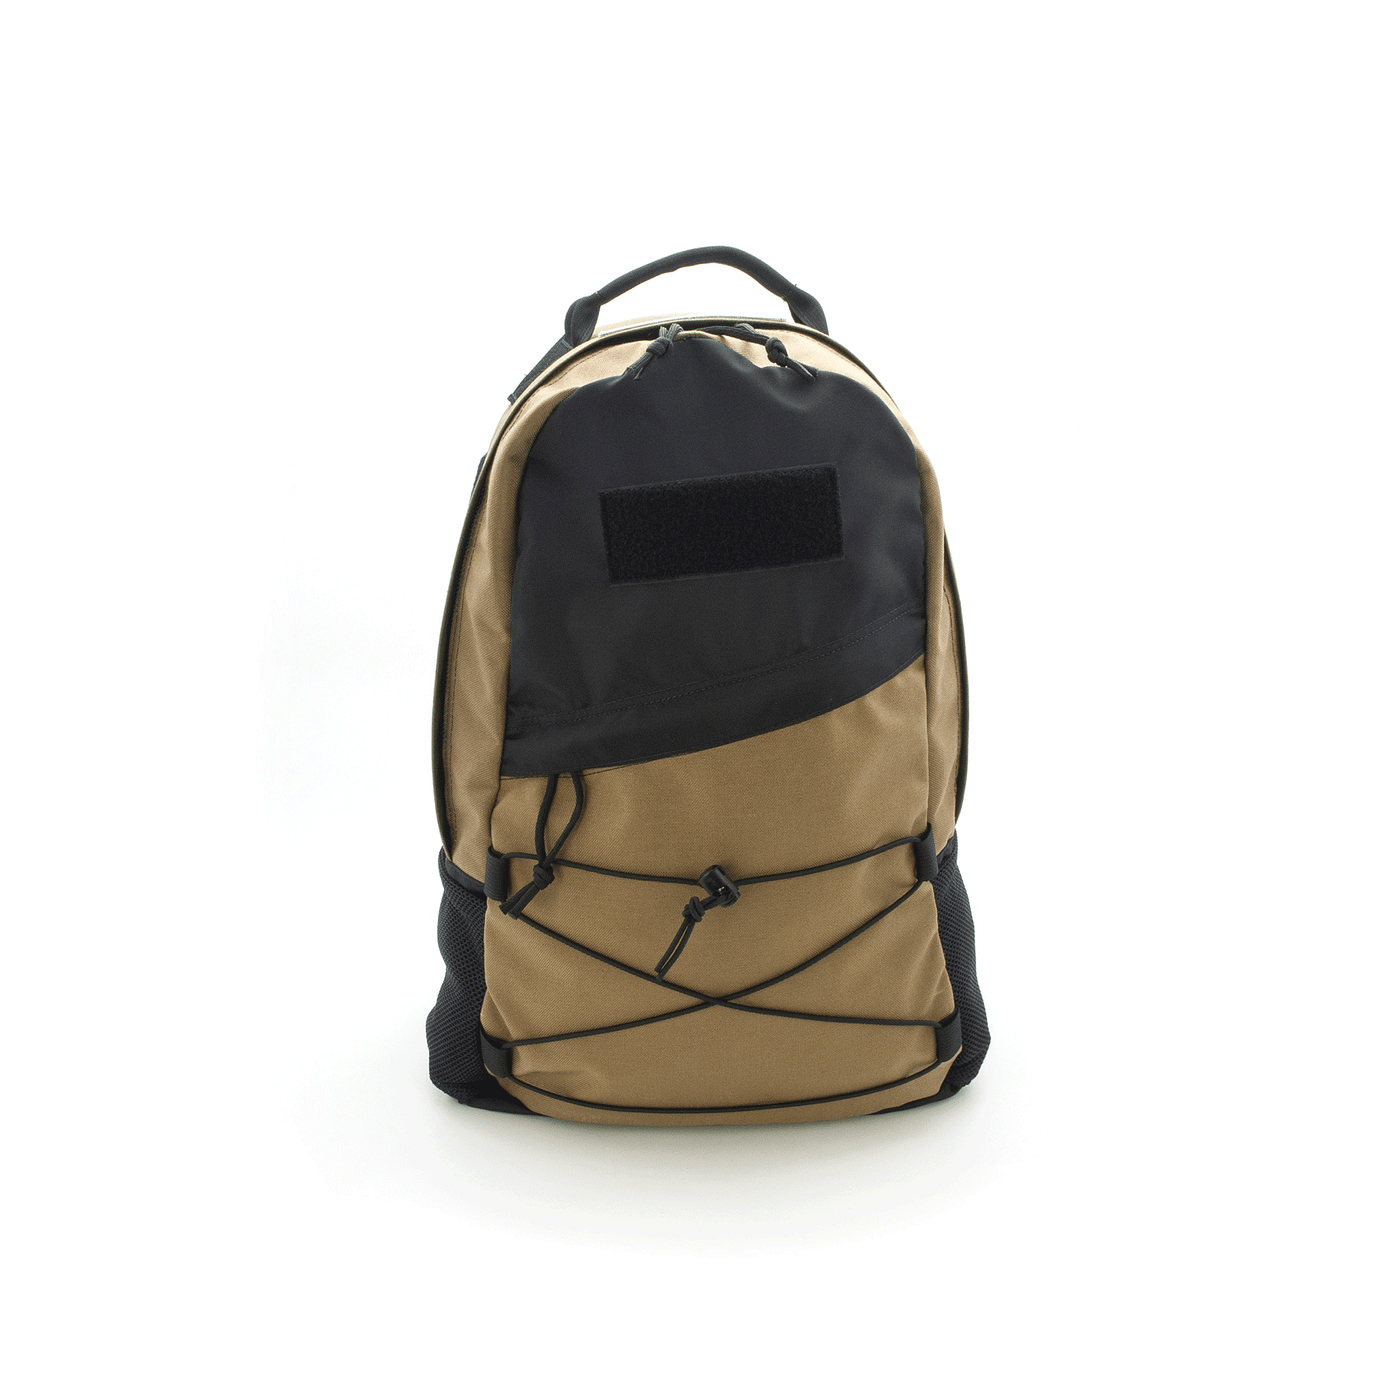 Maglite EDC Backpack